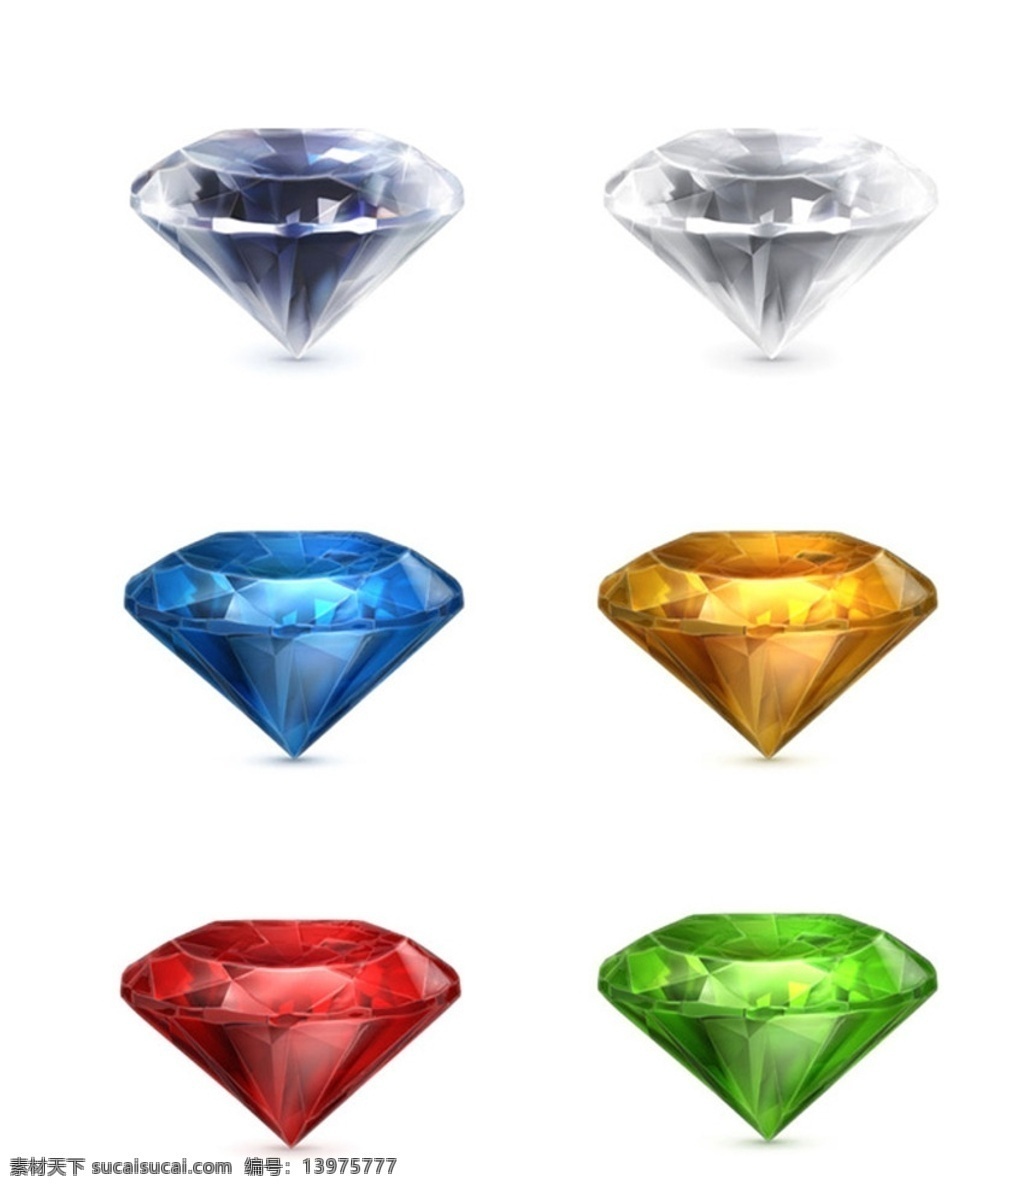 矢量钻石 矢量 钻石 灰色砖石 黑色钻石 蓝色钻石 黄色钻石 红色钻石 绿色钻石 彩钻 矢量素材 现代科技